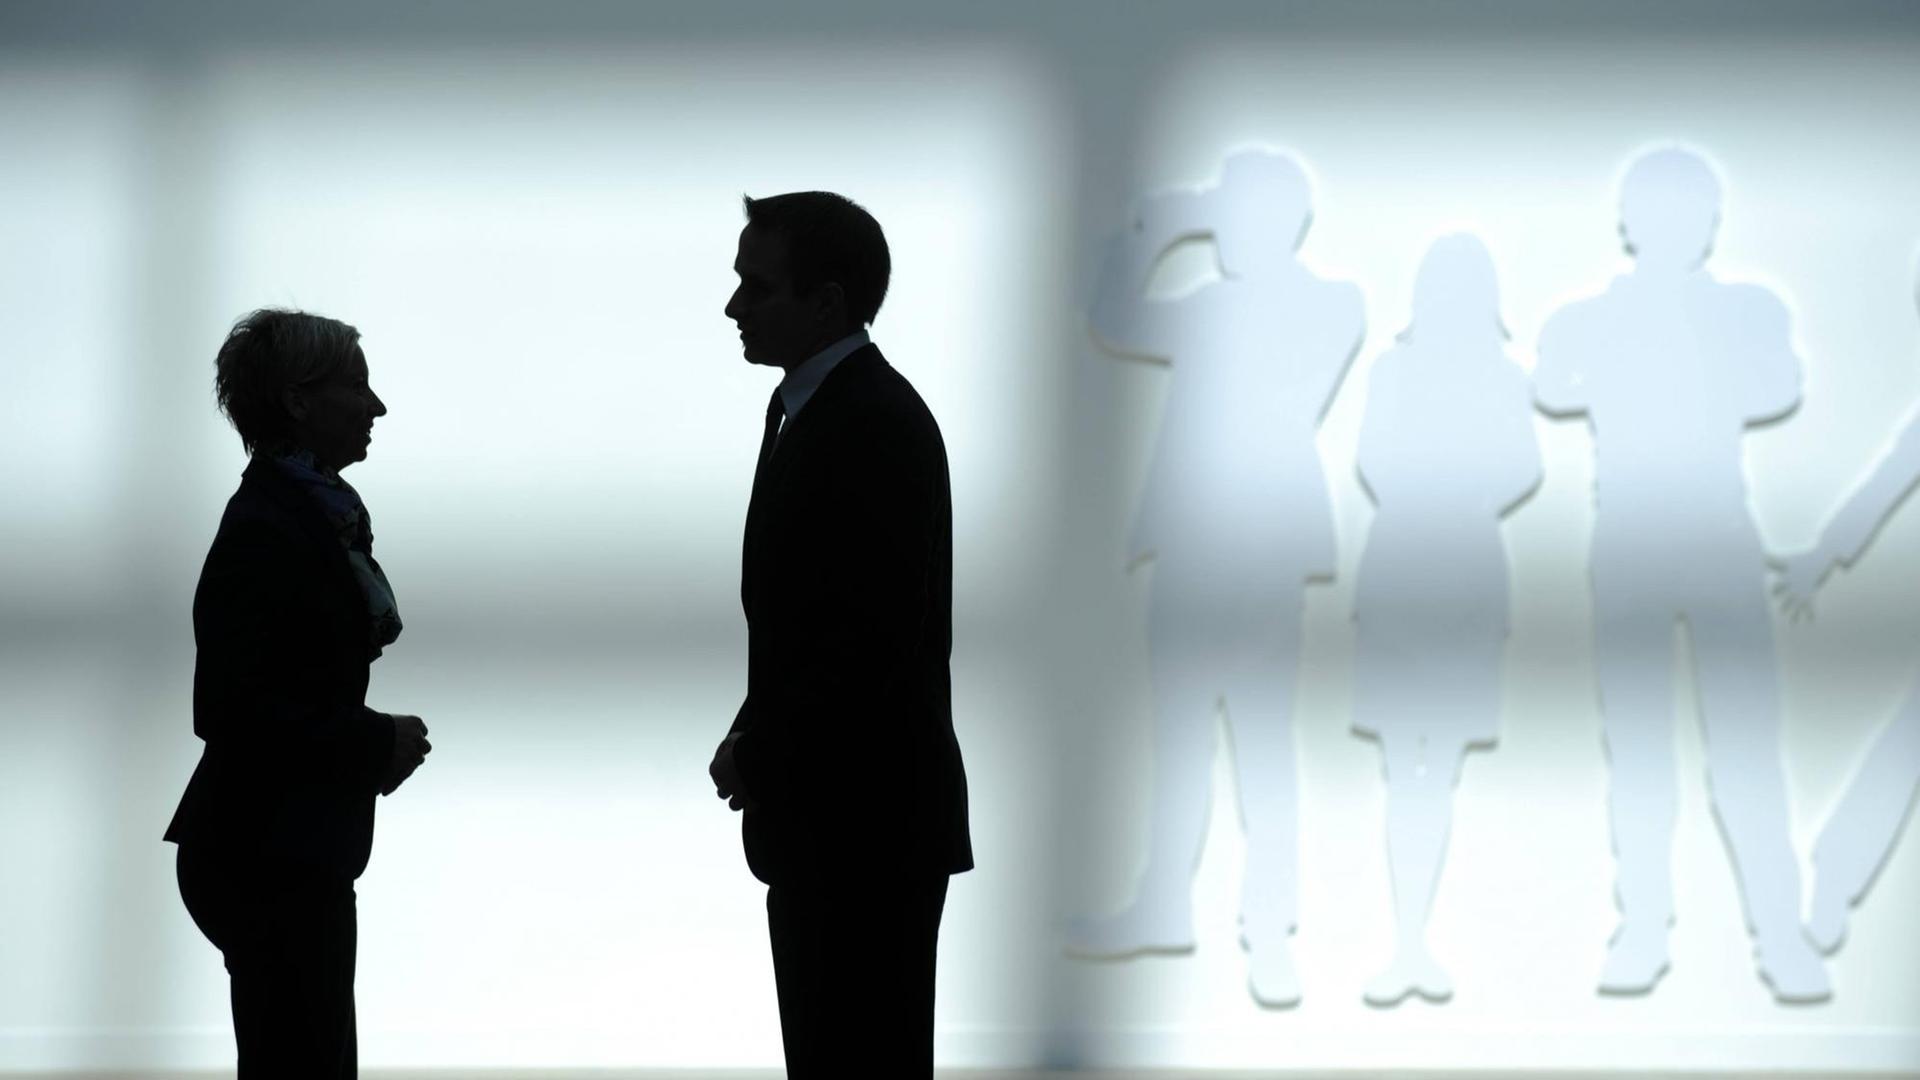 Die Silhouette eines Geschäftsmannes und einer Geschäftsfrau vor einer weißen Wand.